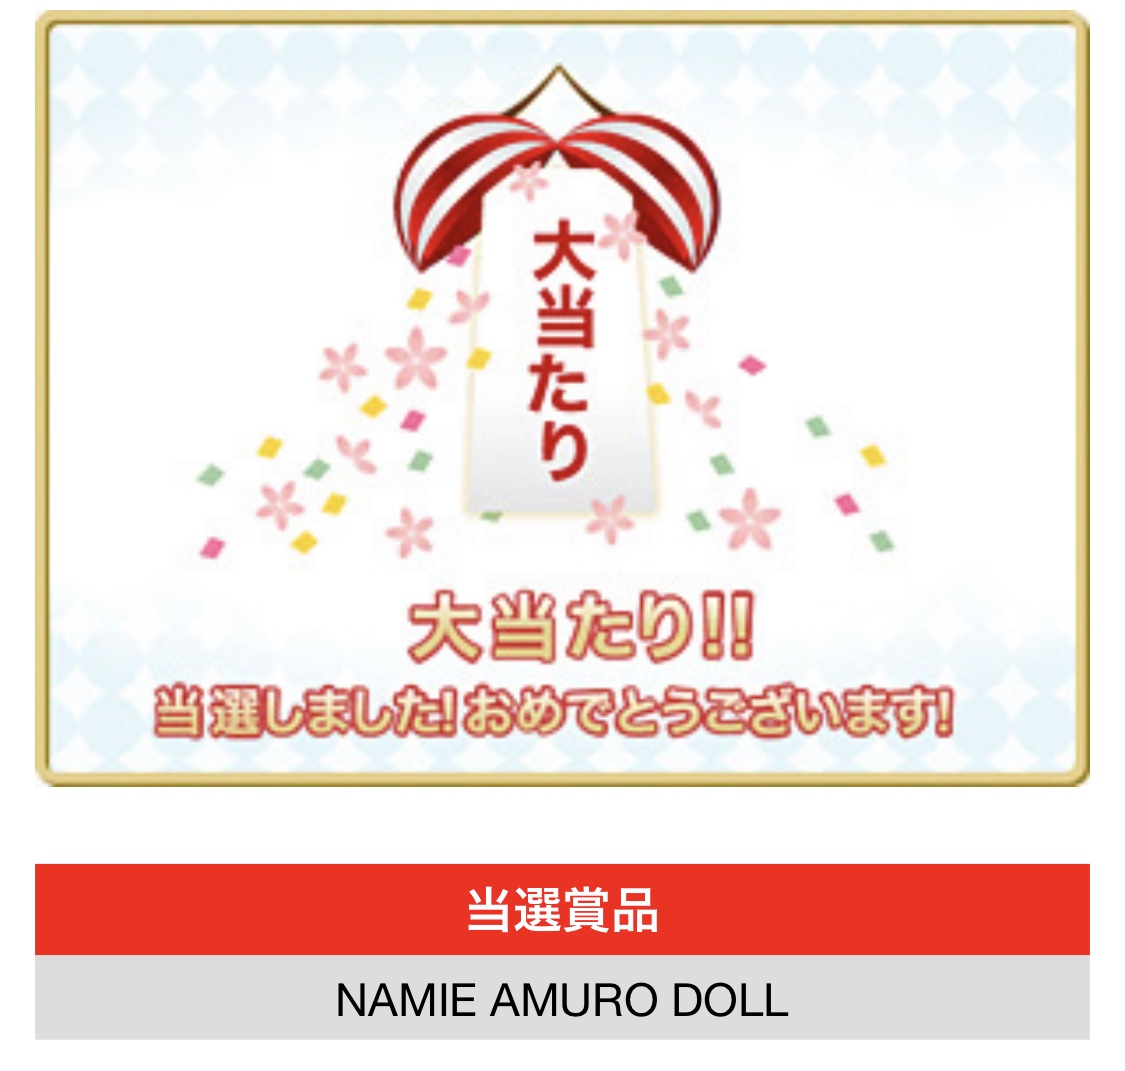 奈美恵サンタ降臨、NAMIE AMURO DOLLが当たったよ - Twitterボットはディーバの夢を見るか